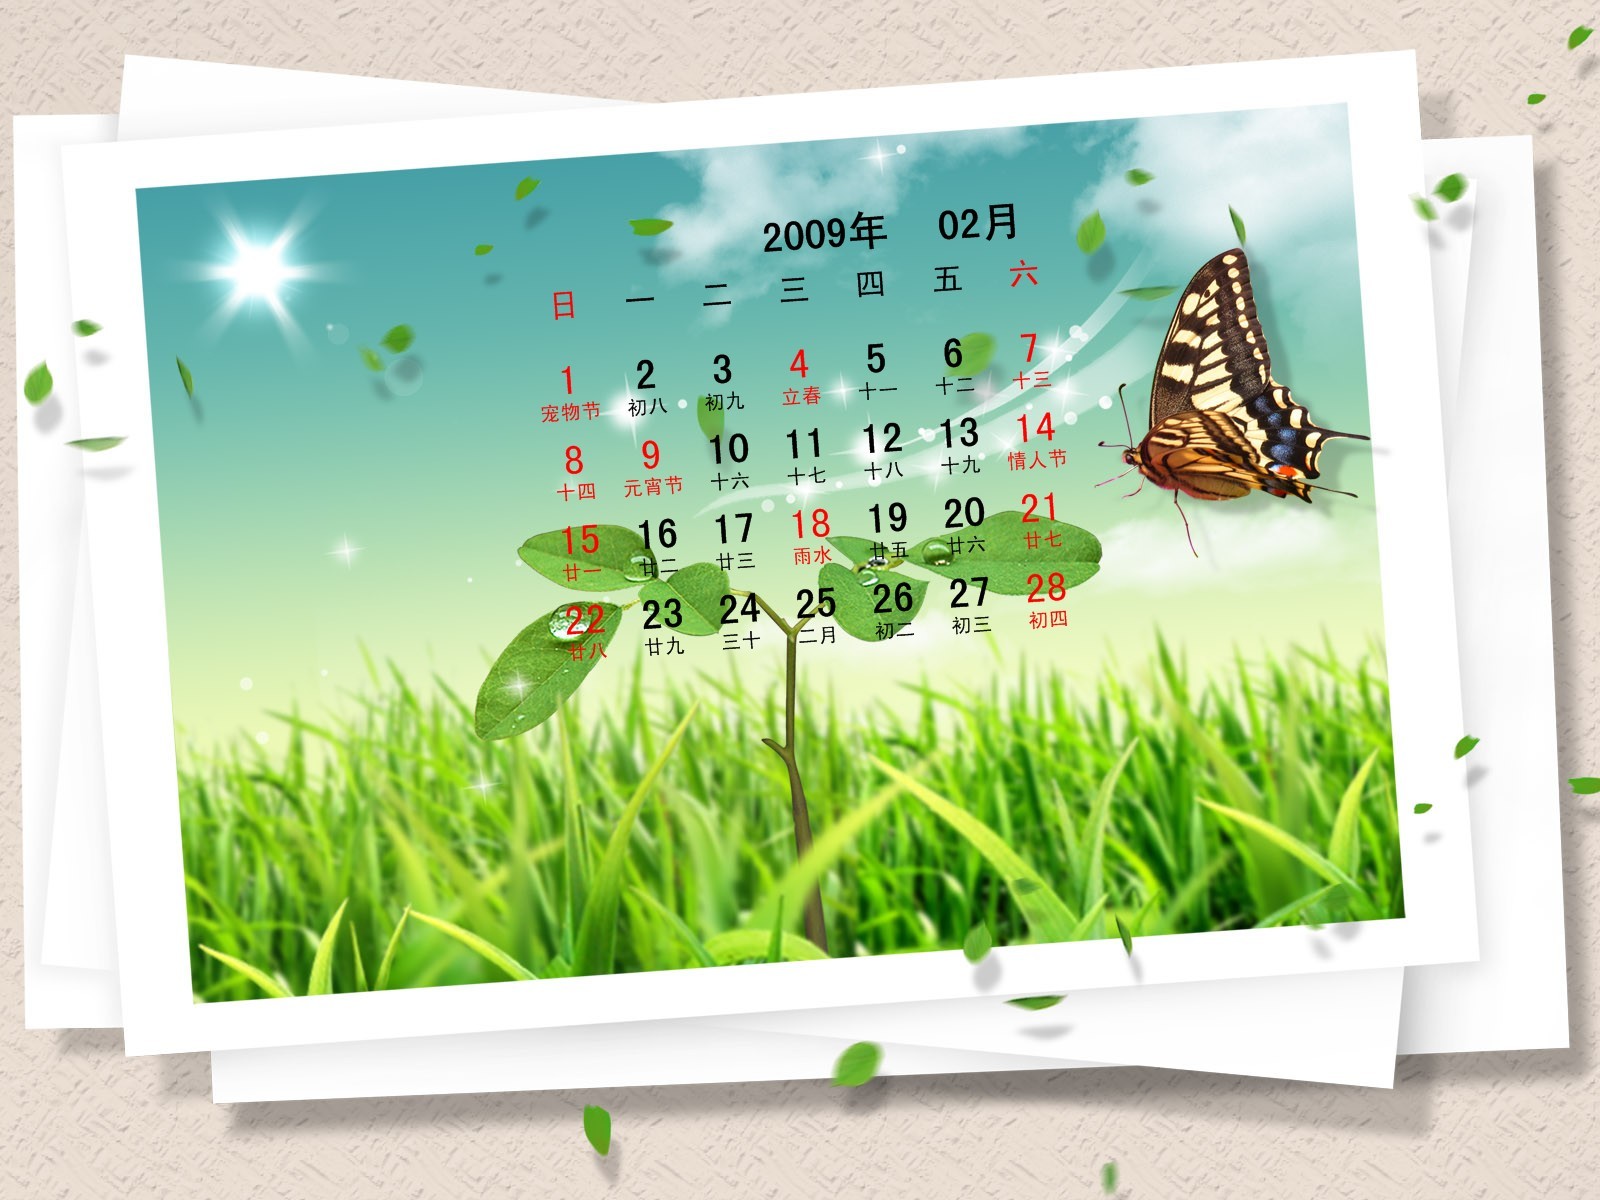 PaperArt 09 años en el fondo de pantalla de calendario febrero #29 - 1600x1200